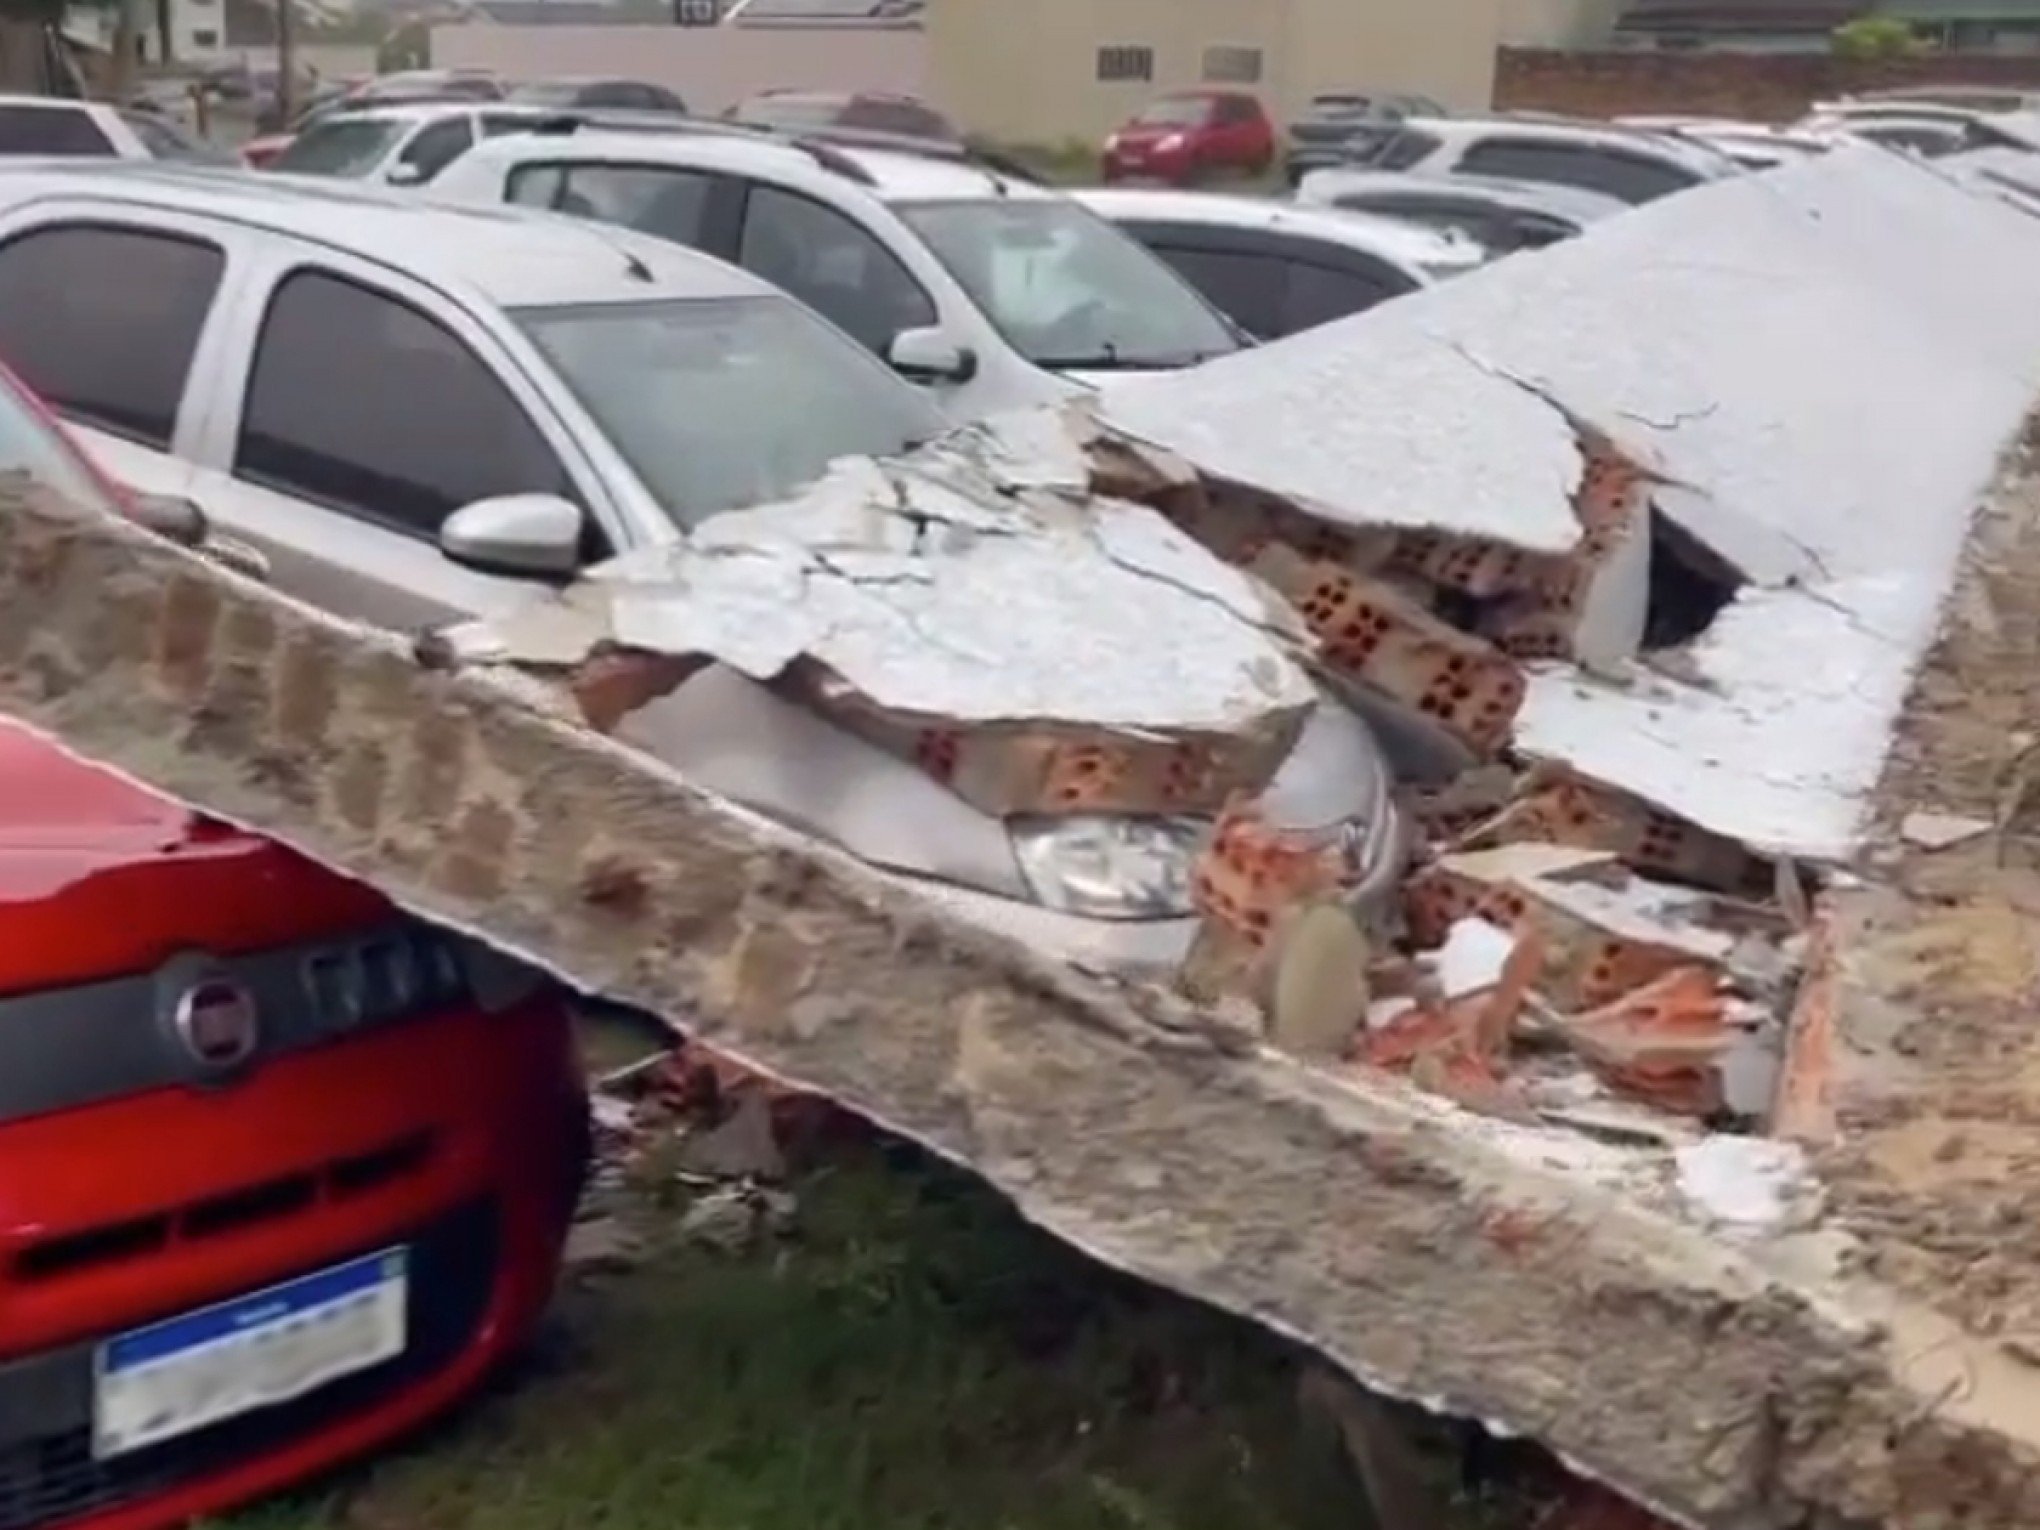 CICLONE: Muro desaba sobre carros estacionados em hospital no litoral norte